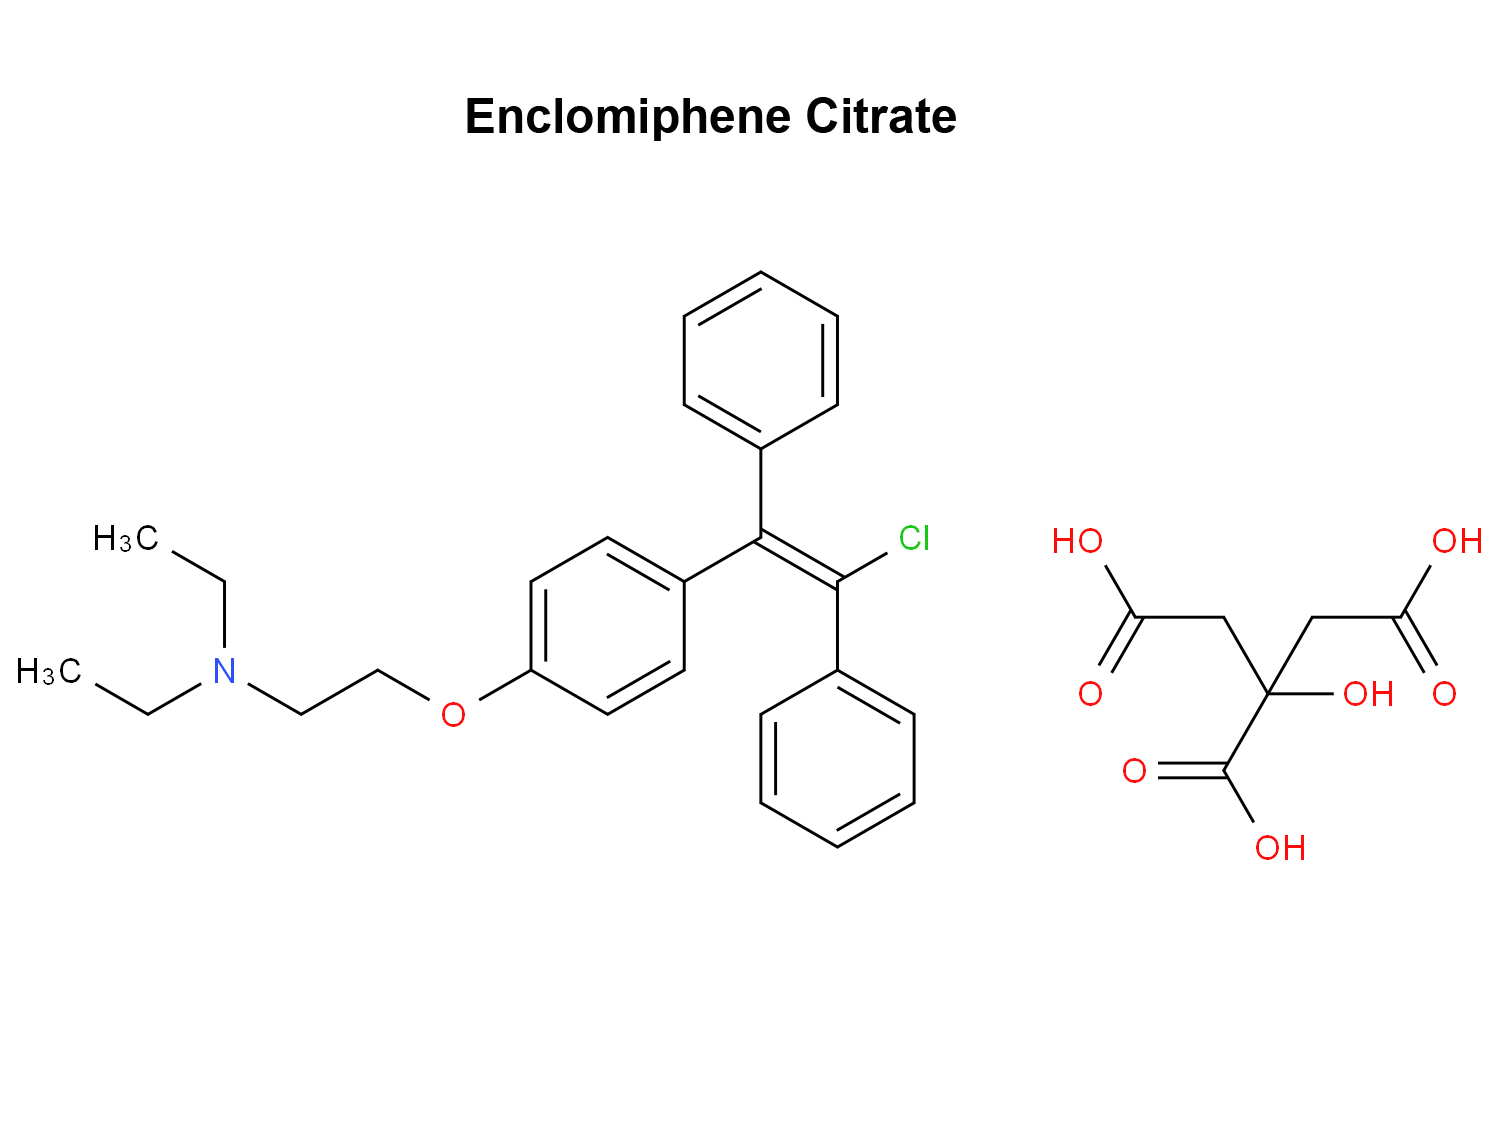 Enclomiphene Citrate 7599-79-3 antagonis reseptor estrogen selektif